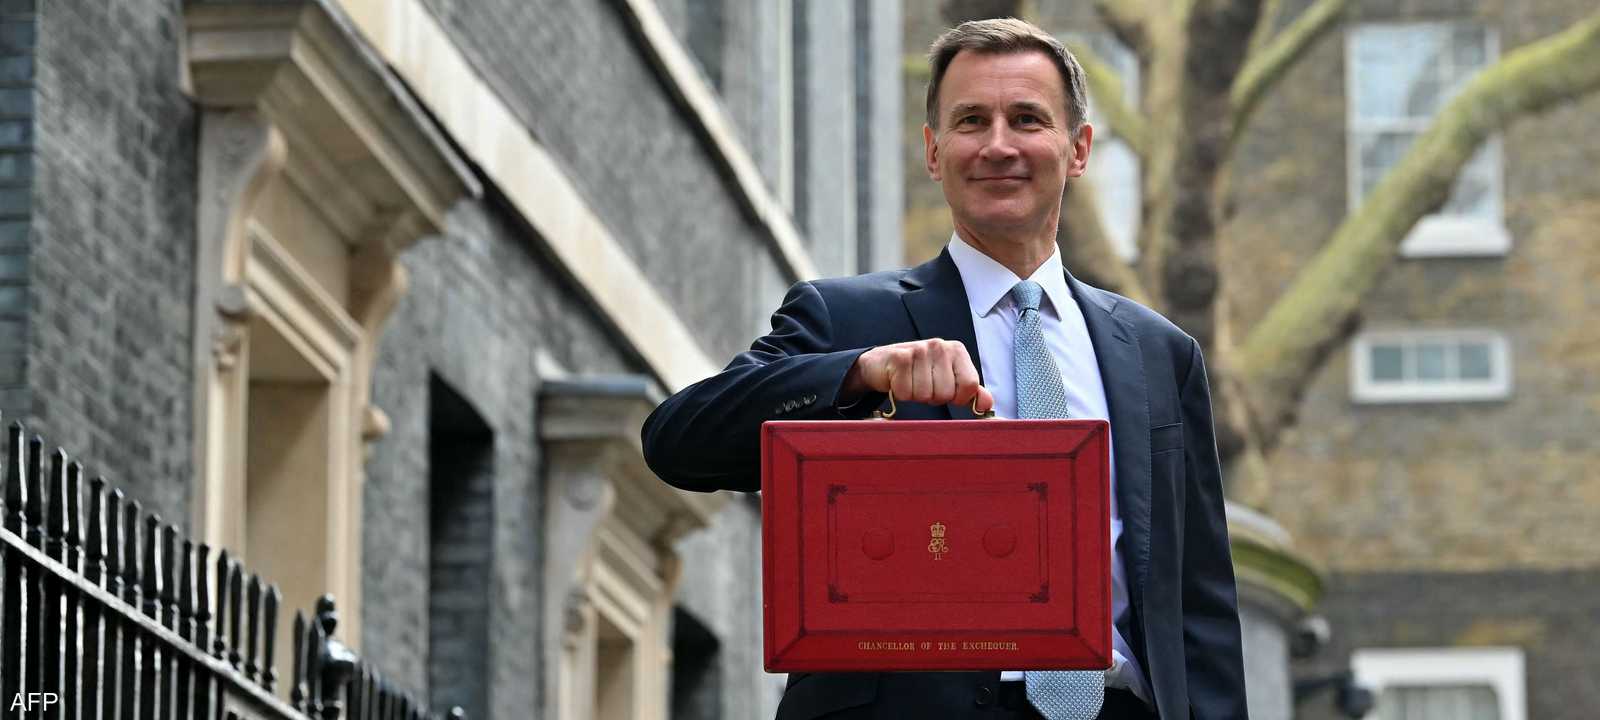 وزير الخزانة البريطاني يحمل حقيبة الميزانية الحمراء الشهيرة